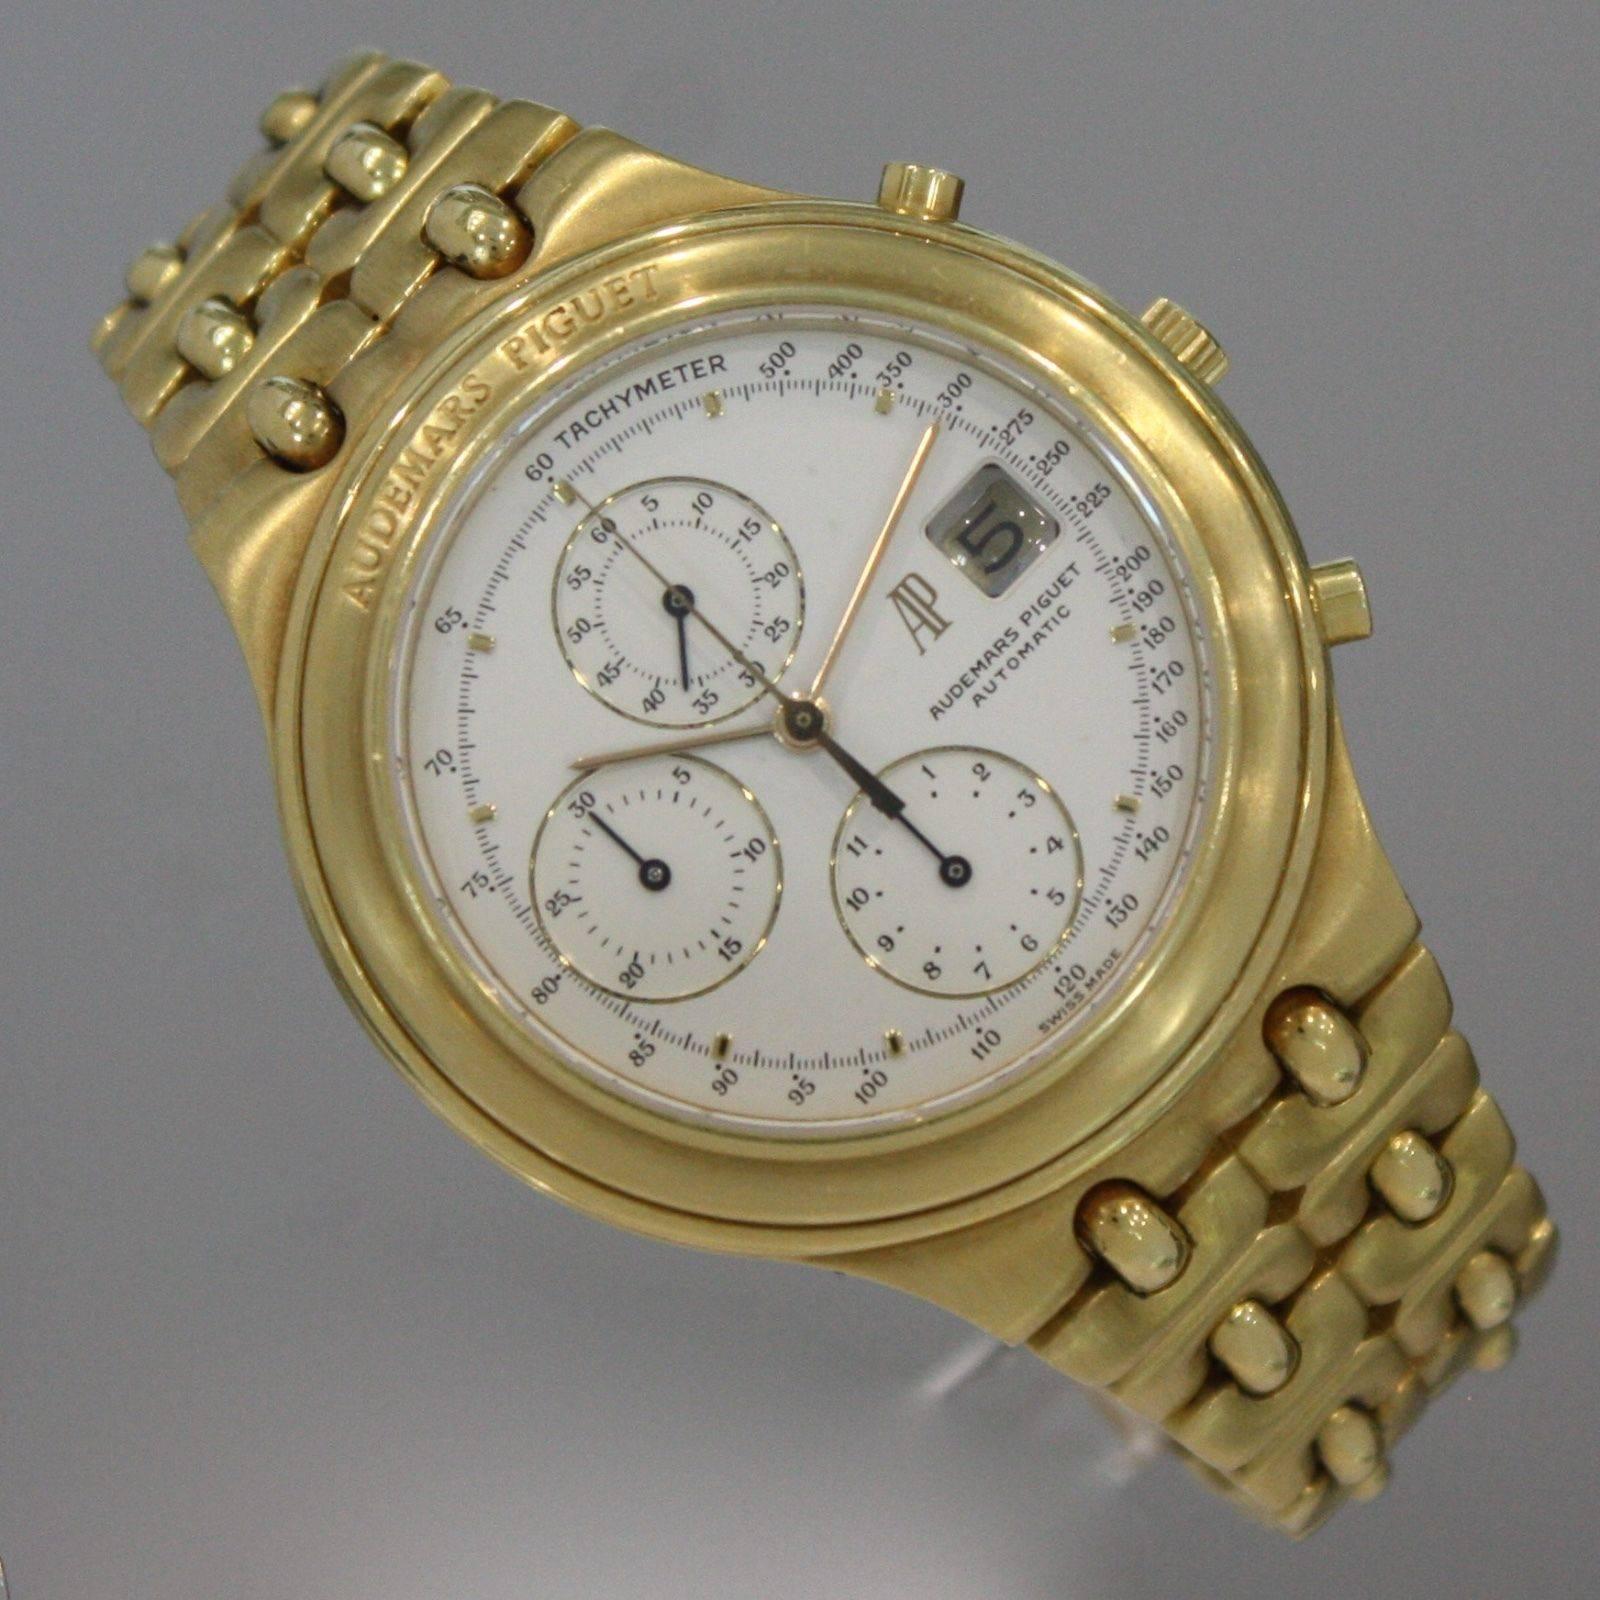 Audemars Piguet Yellow Gold Huitieme Chronograph Automatic Wristwatch ...